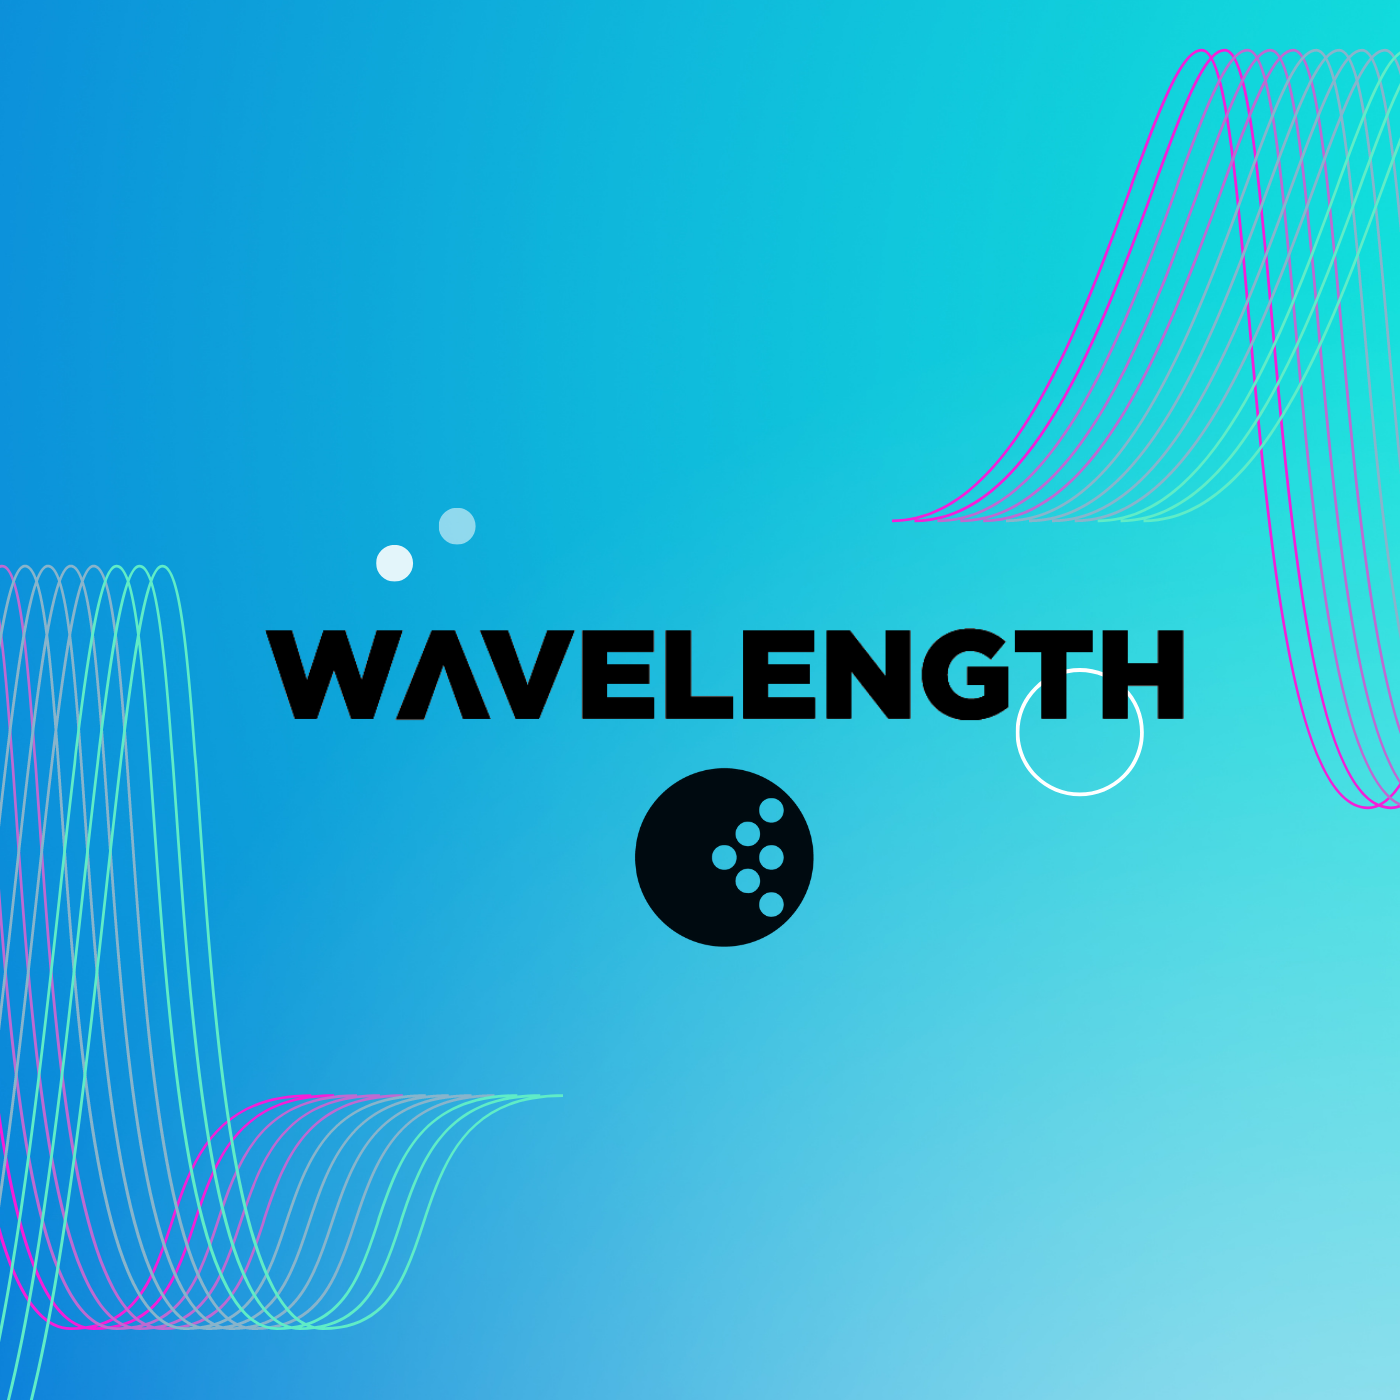 Wavelength: Fringe Episode!